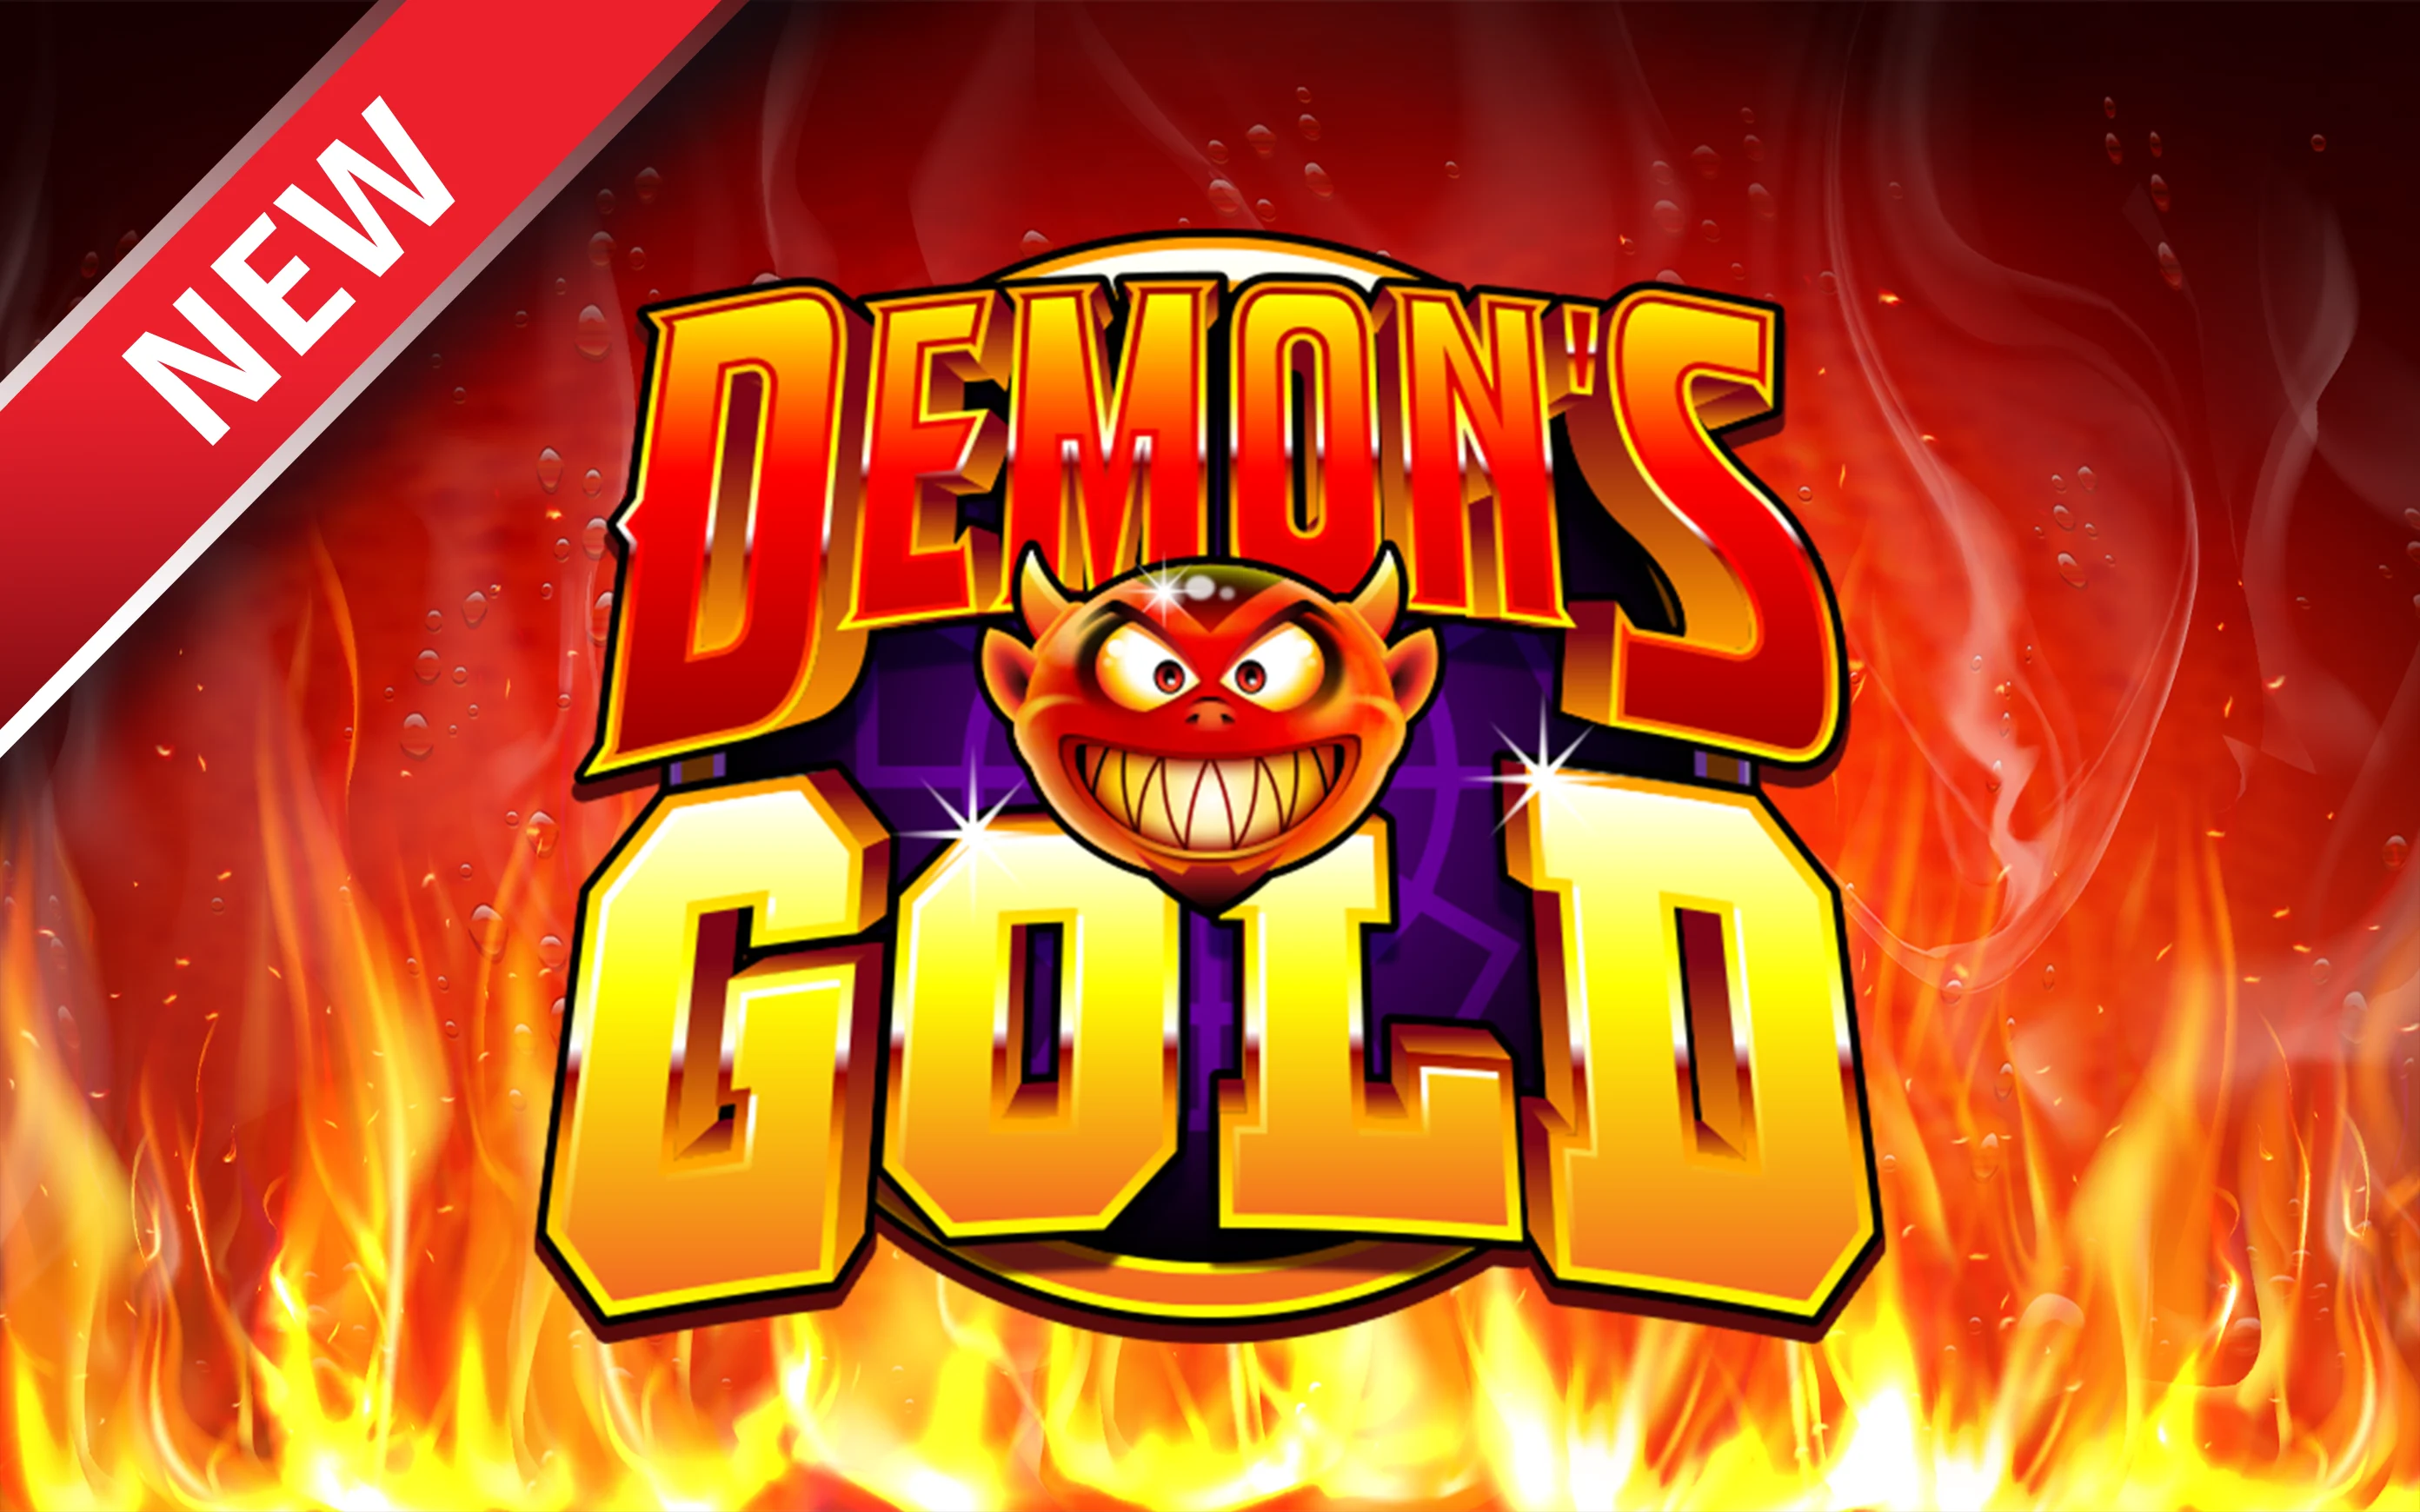 Gioca a Demon's Gold sul casino online Starcasino.be